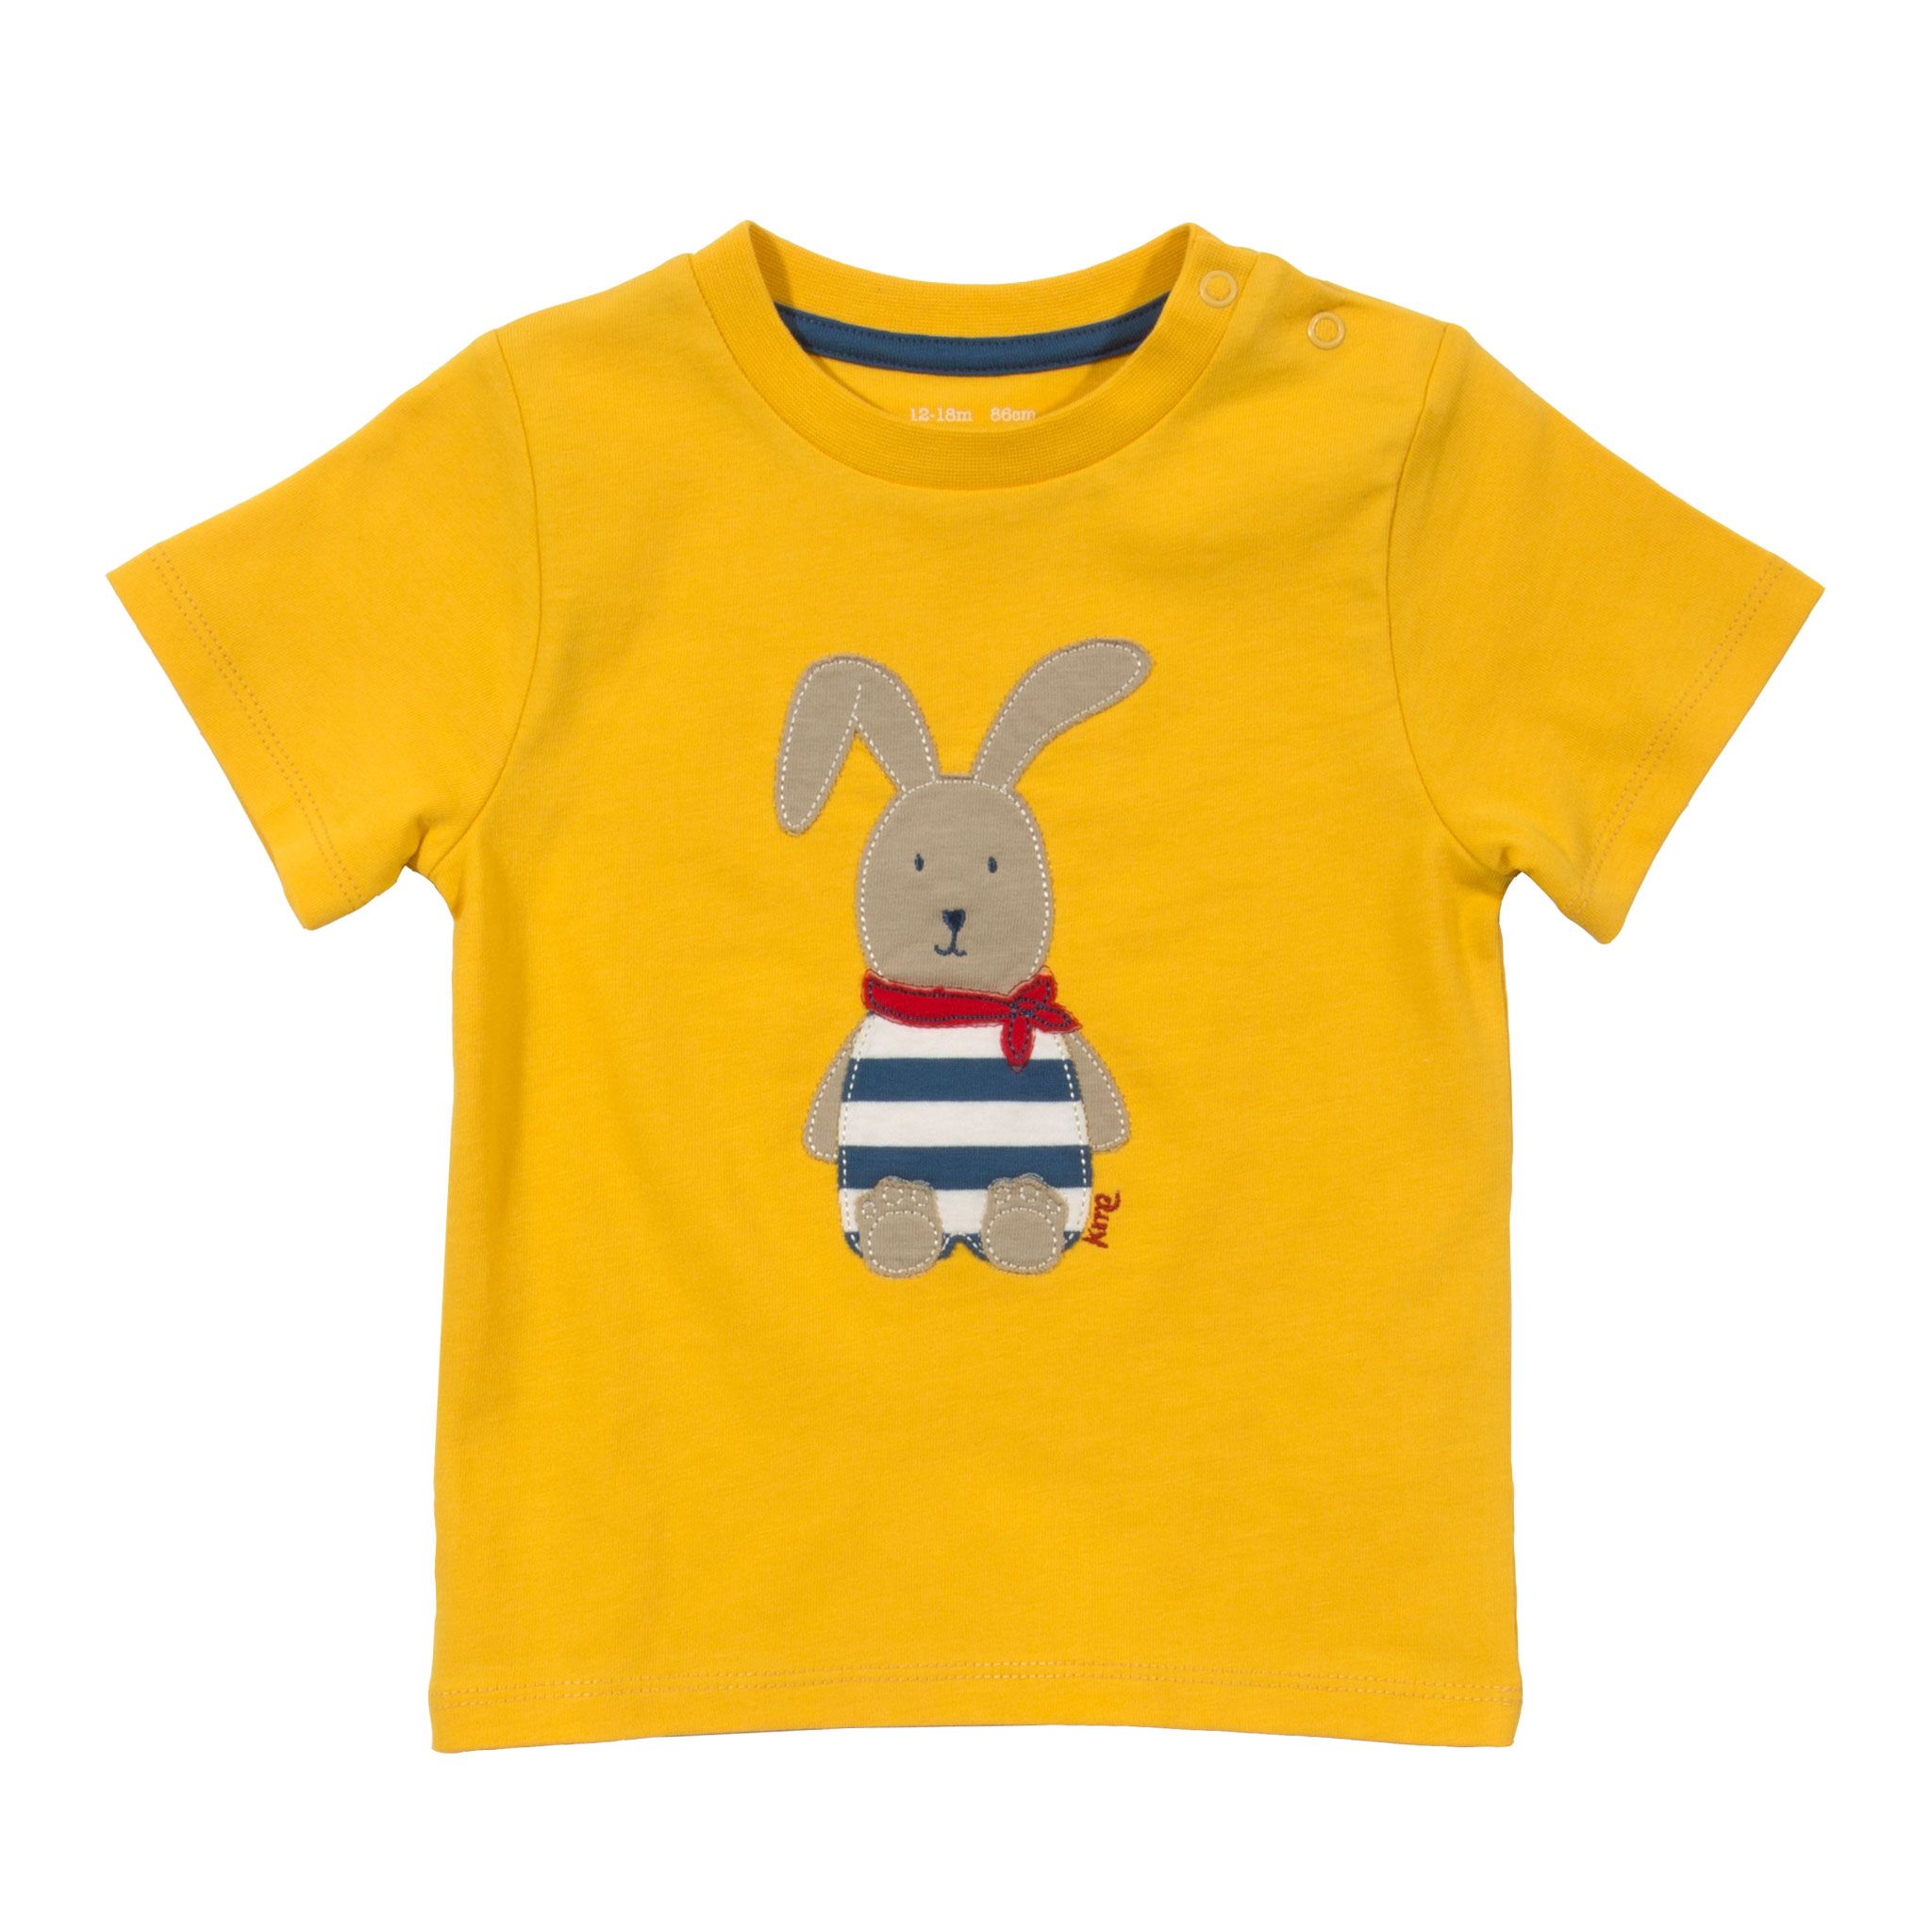 Kite Short Sleeve T-Shirt Baby Boy Rabbit Yellow